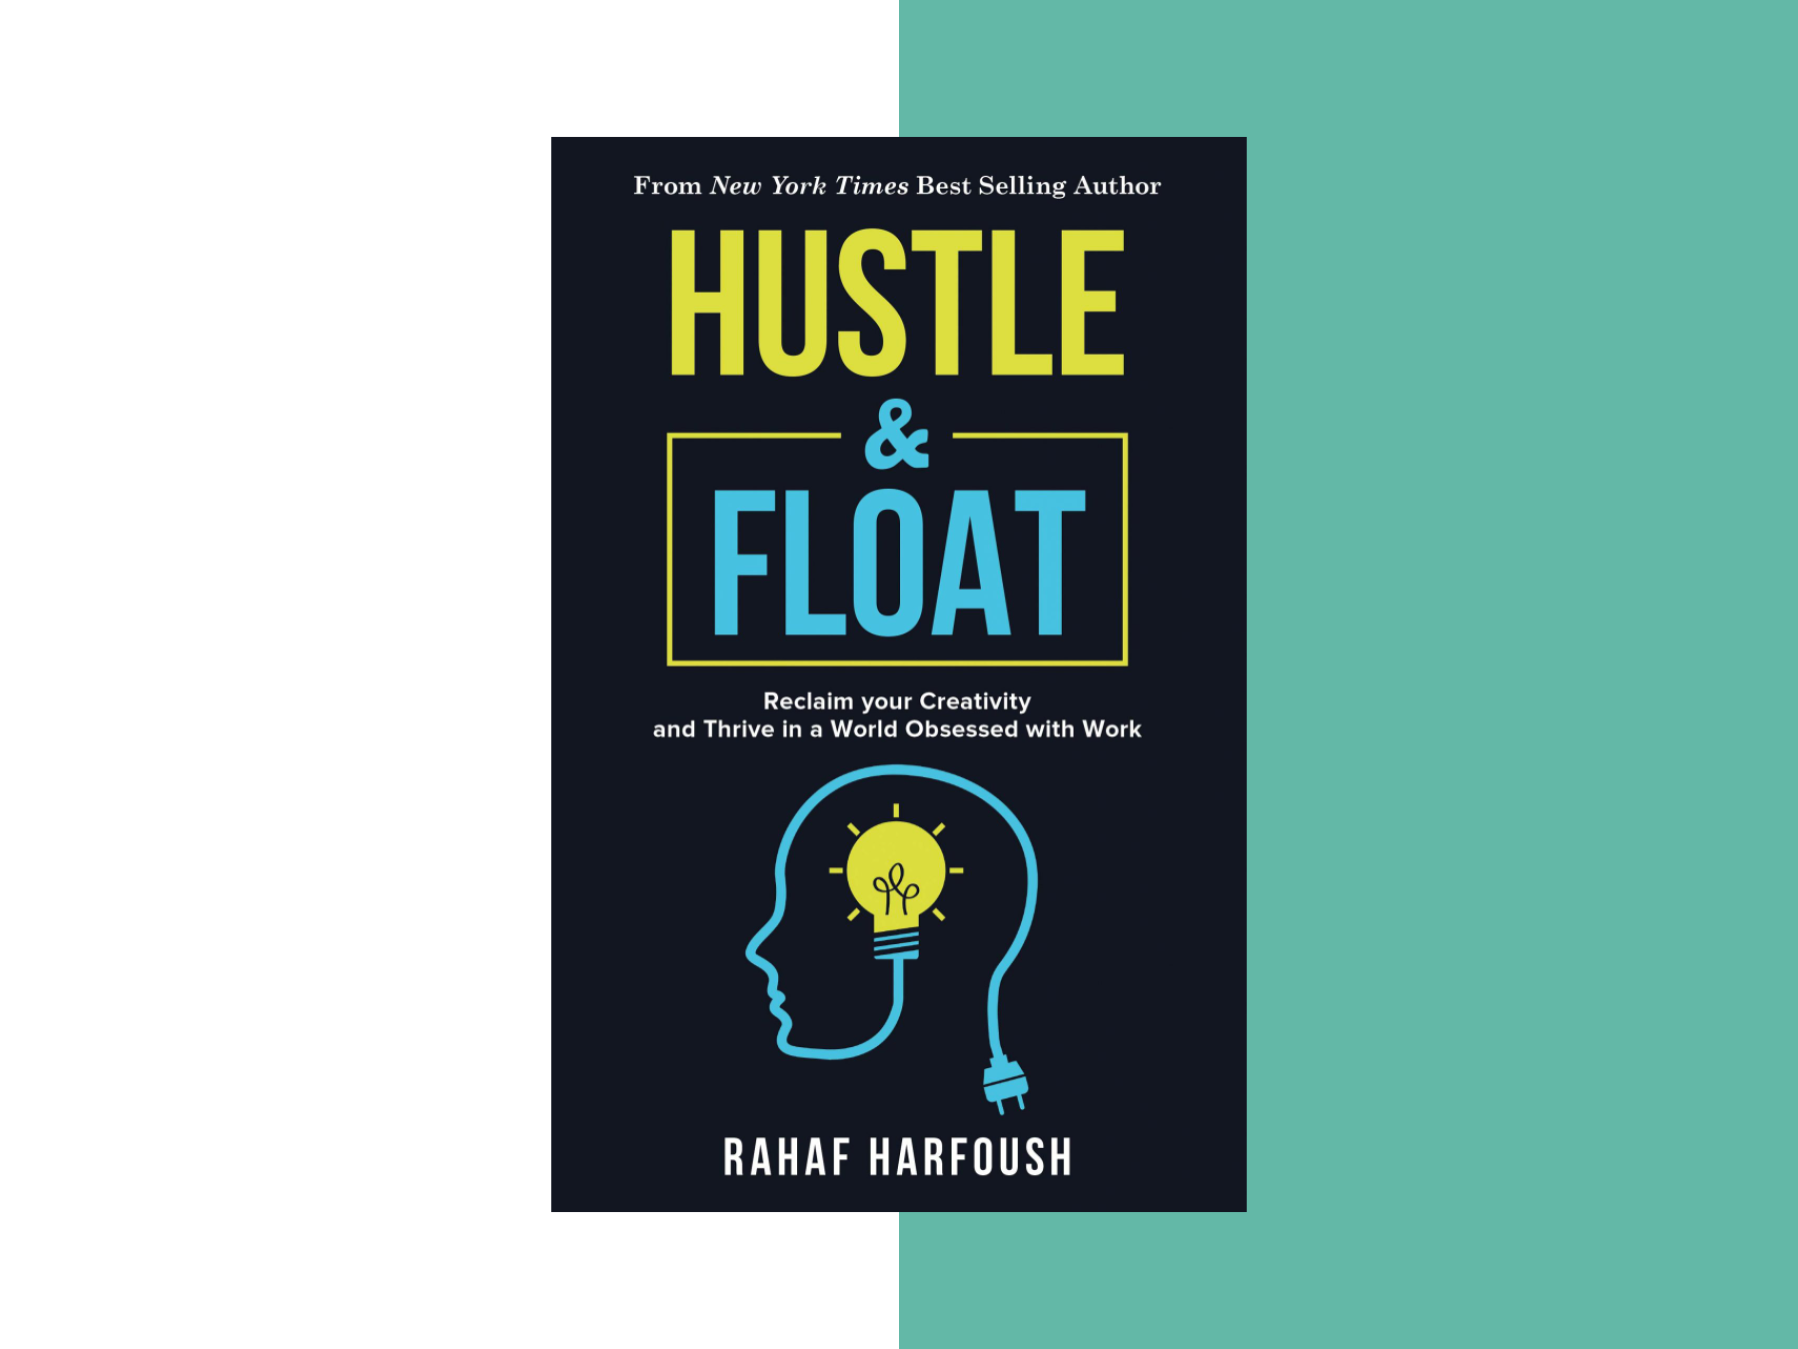 Rahaf Harfoush – Hustle & Float